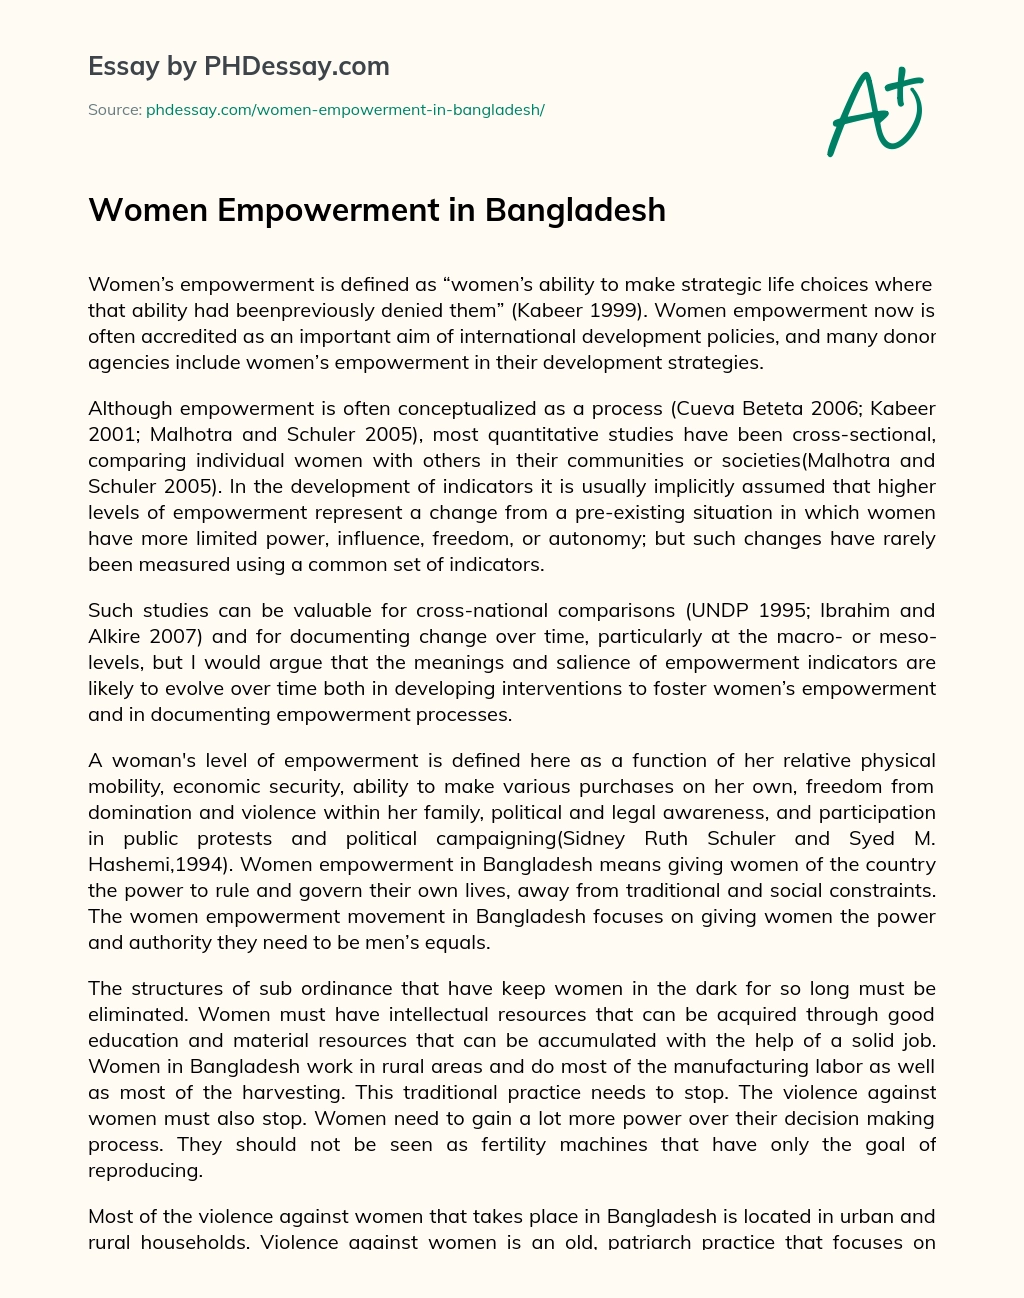 Women Empowerment in Bangladesh essay